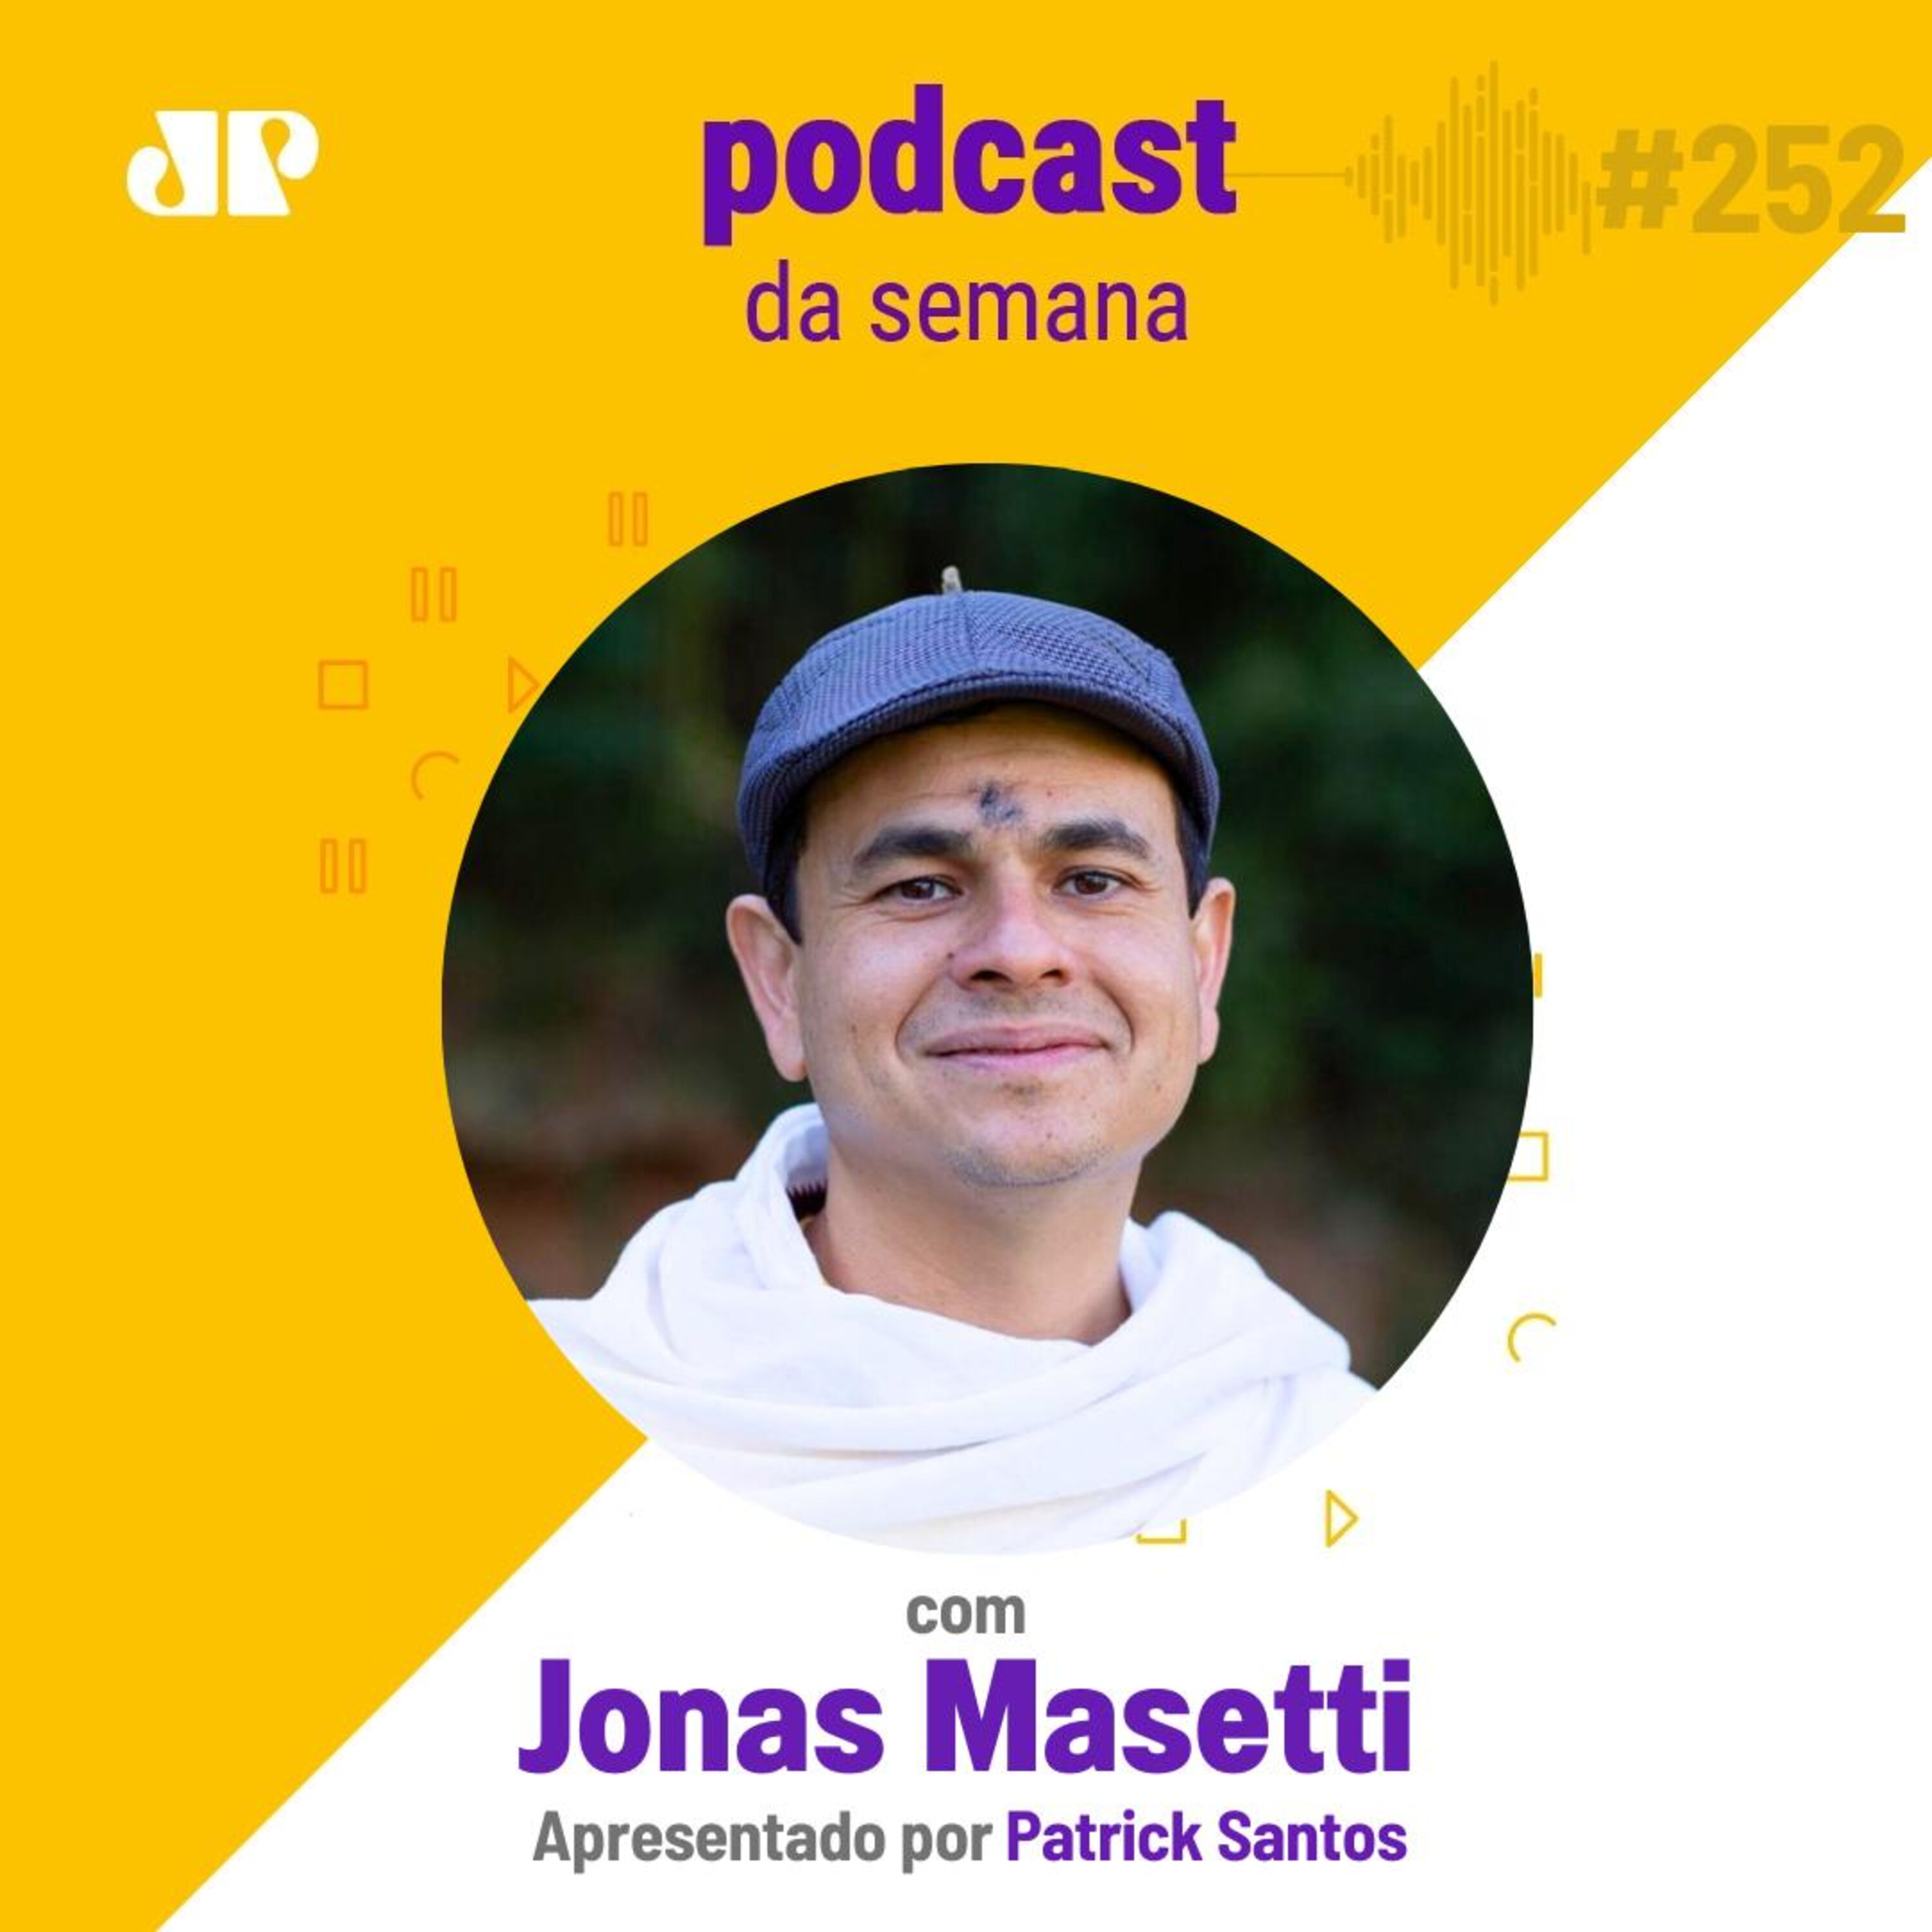 Jonas Masetti - "O futuro é ancestral"